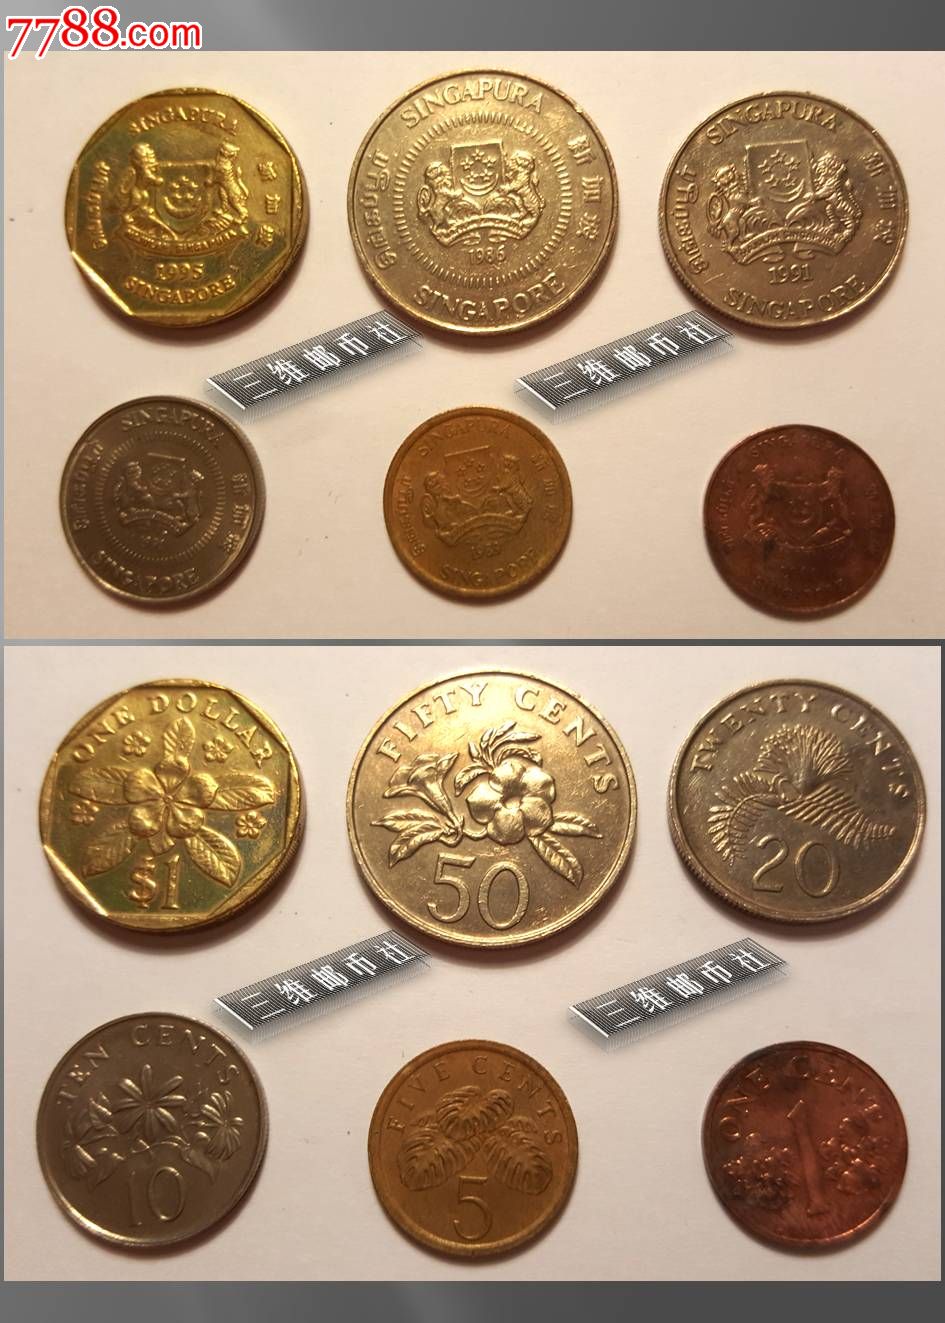 新加坡硬币种类图片